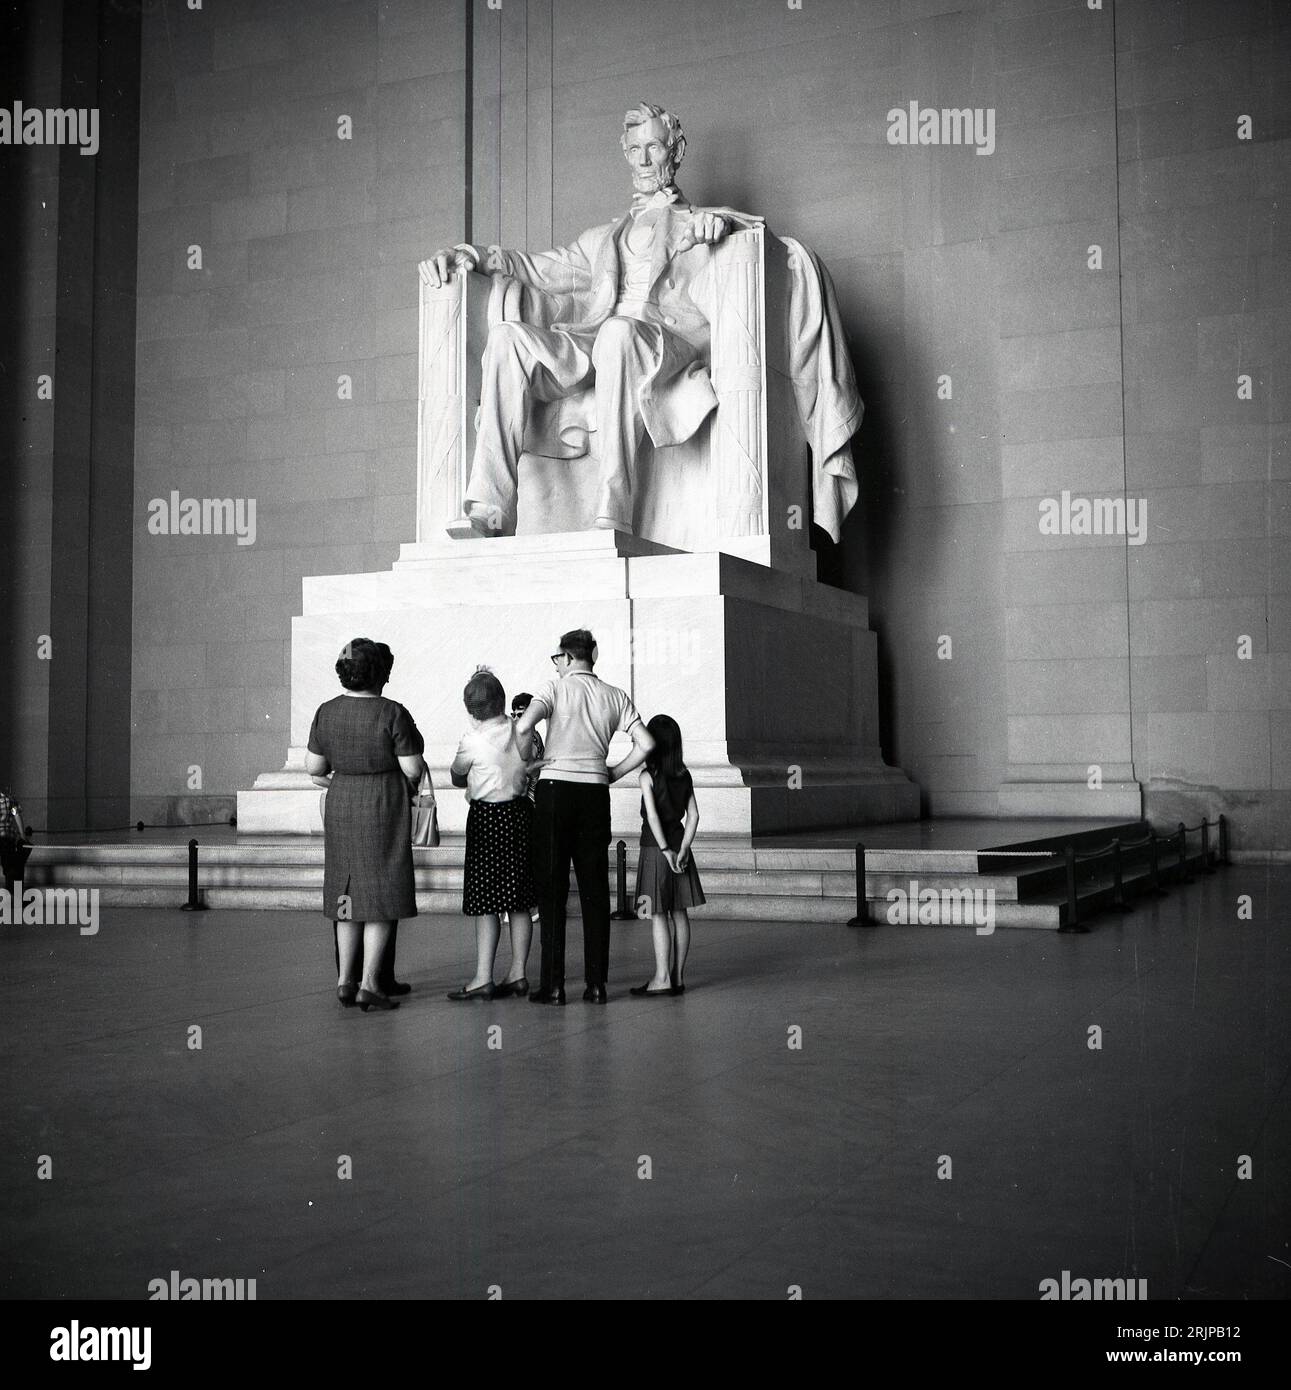 Anni '1960, storica, una famiglia che guarda la statua di Arabham Lincoln all'interno del Lincoln Memorial sulla National mail, Washington DC, USA. Progettata da Daniel Chester French, la grande statua in marmo del XVI presidente fu completata nel 1920, con una presentazione formale nel 1922. Foto Stock